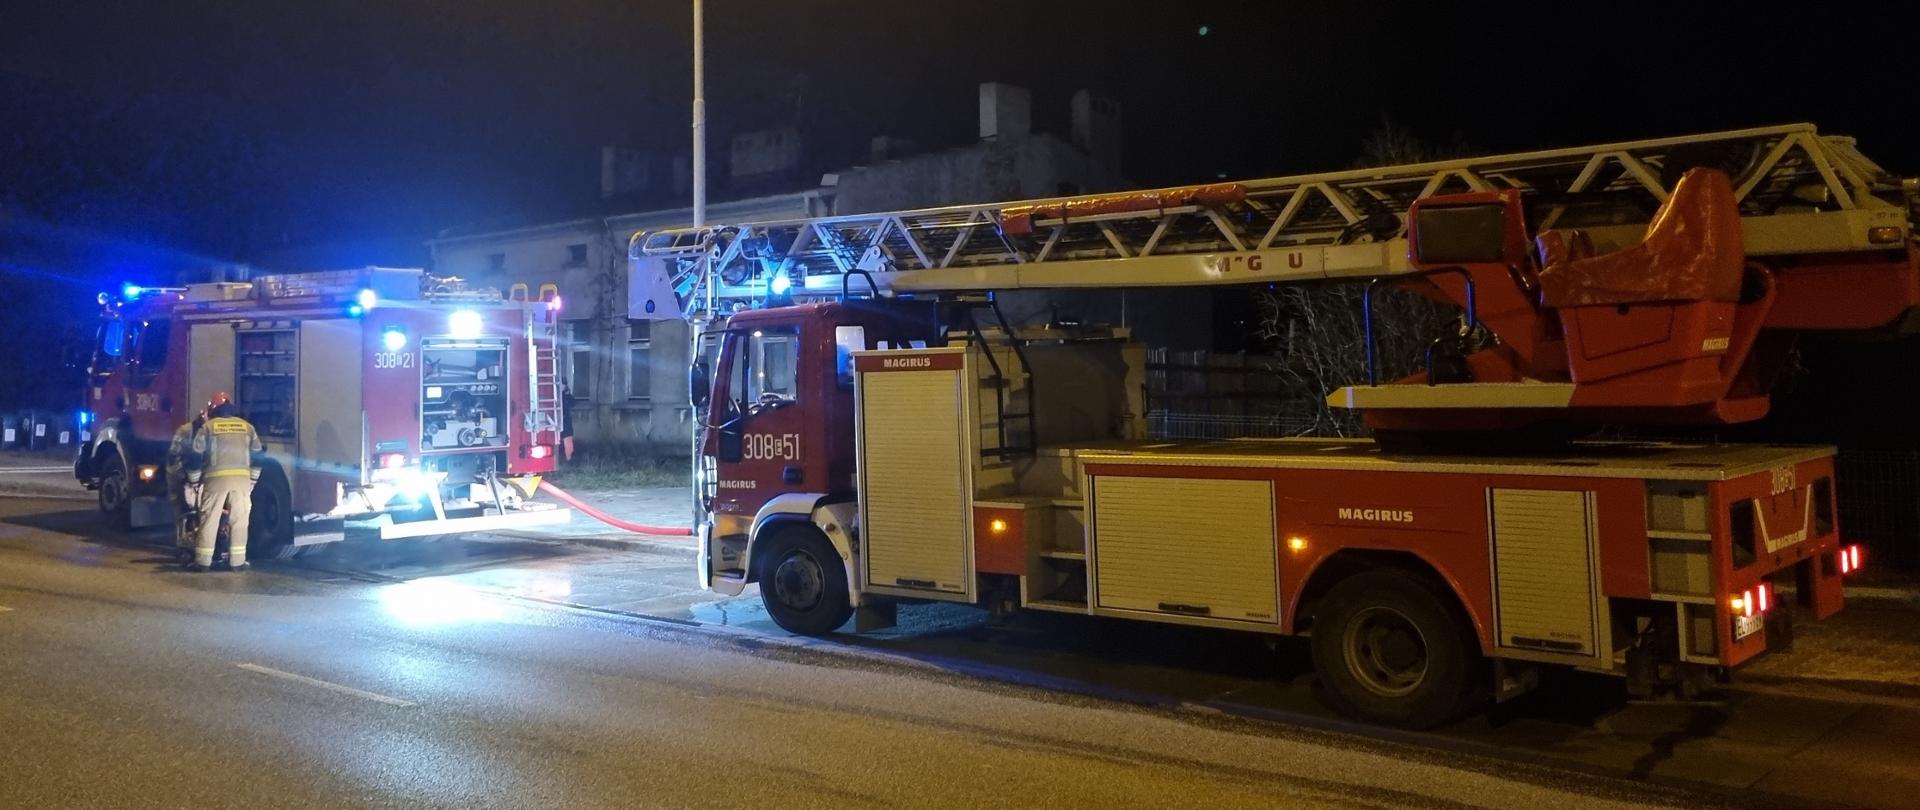 Samochód pożarniczy oraz drabina mechaniczna stojące wzdłuż ulicy przed budynkiem